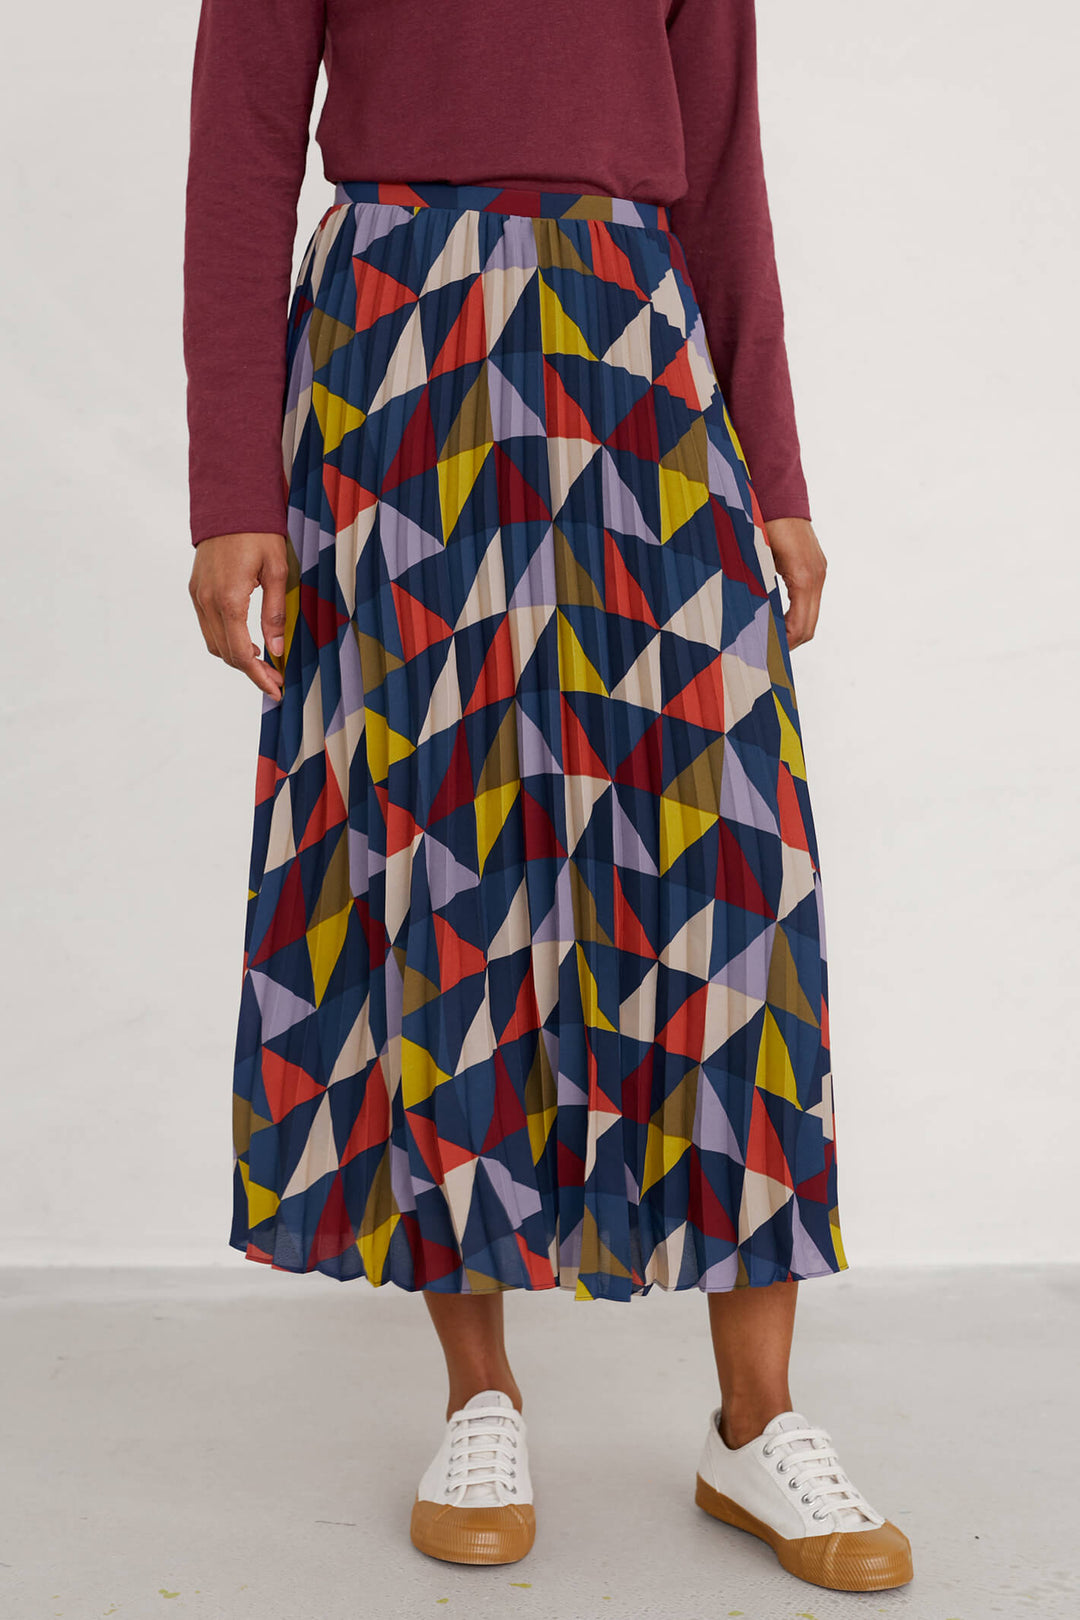 Seasalt B-WM2756-26272 Blanket Geo Magpie Heatherbank Skirt - Shirley Allum Boutique